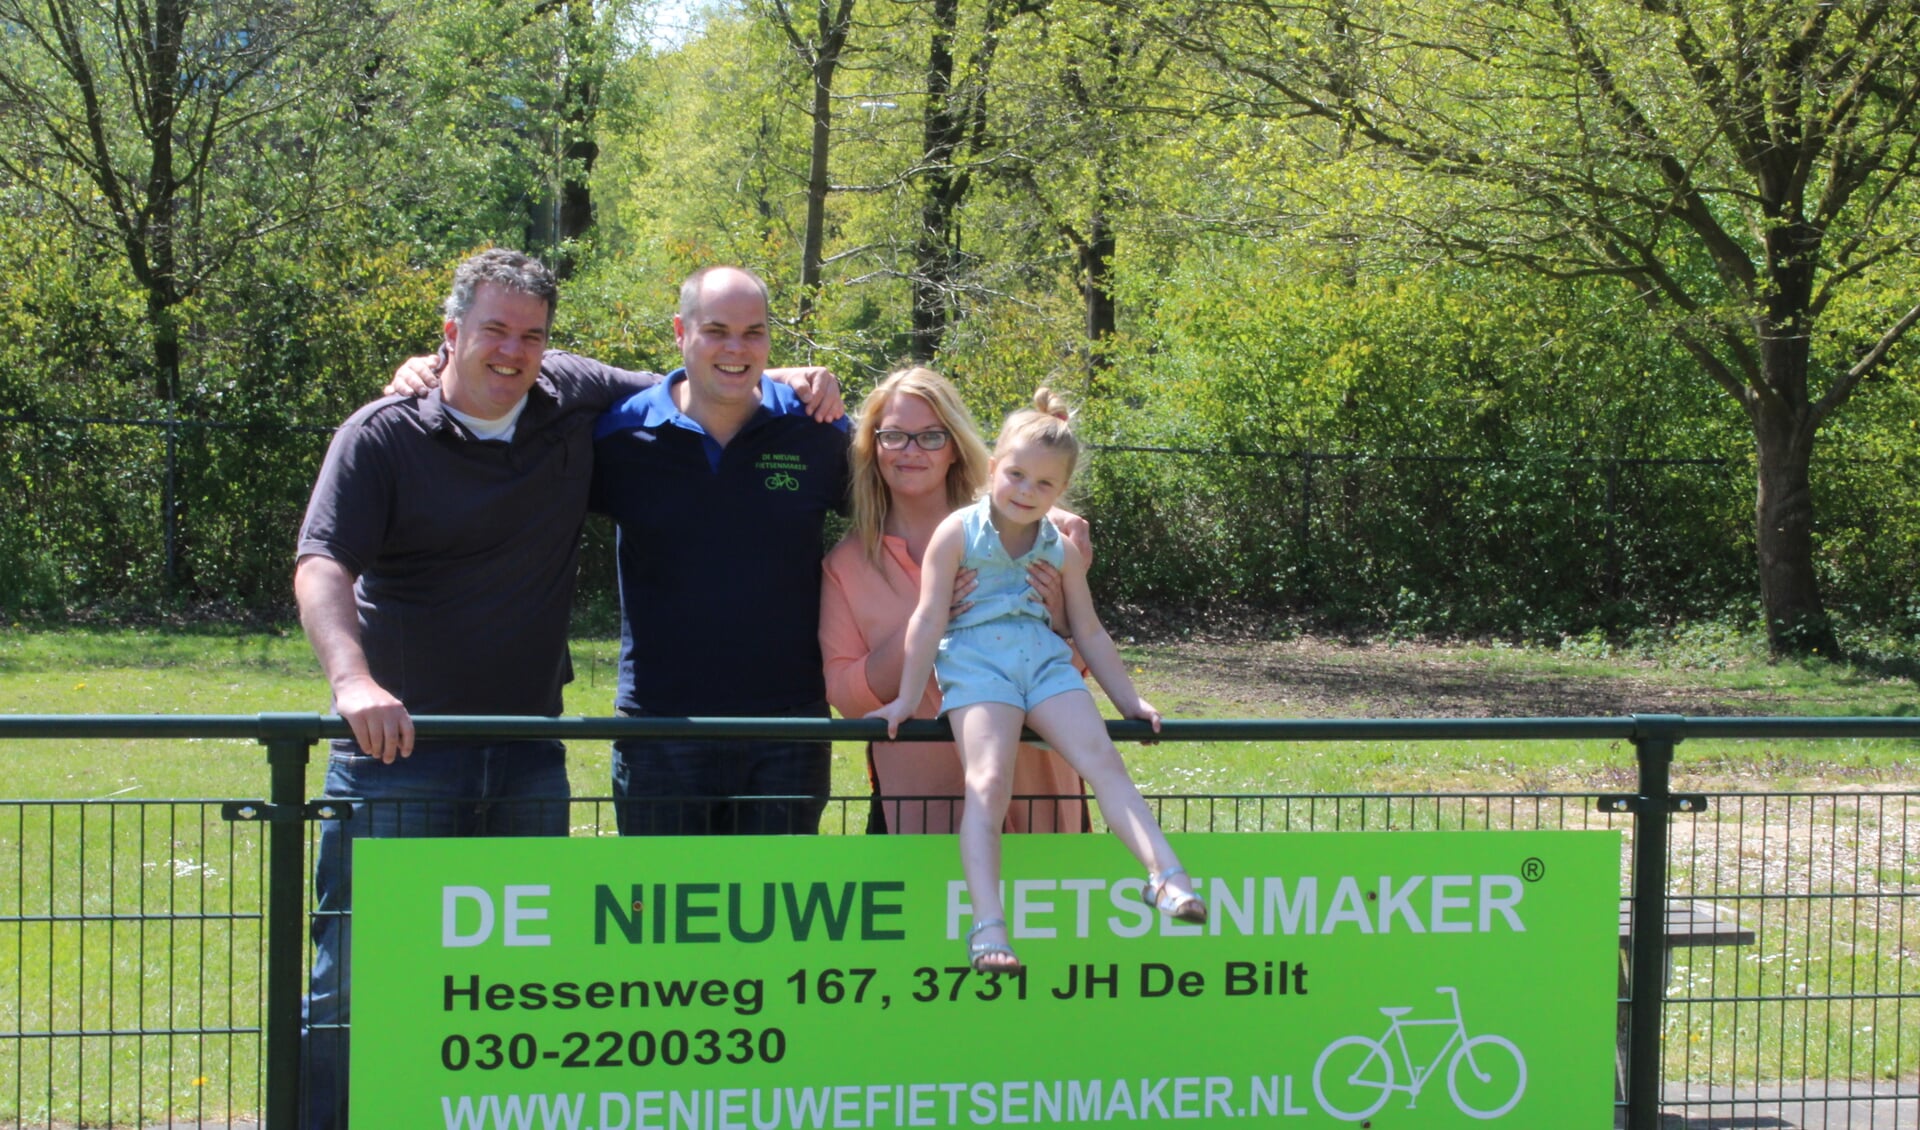 Op de foto Marc met zijn gezin samen met Andrew van der Weerdt namens Nova.